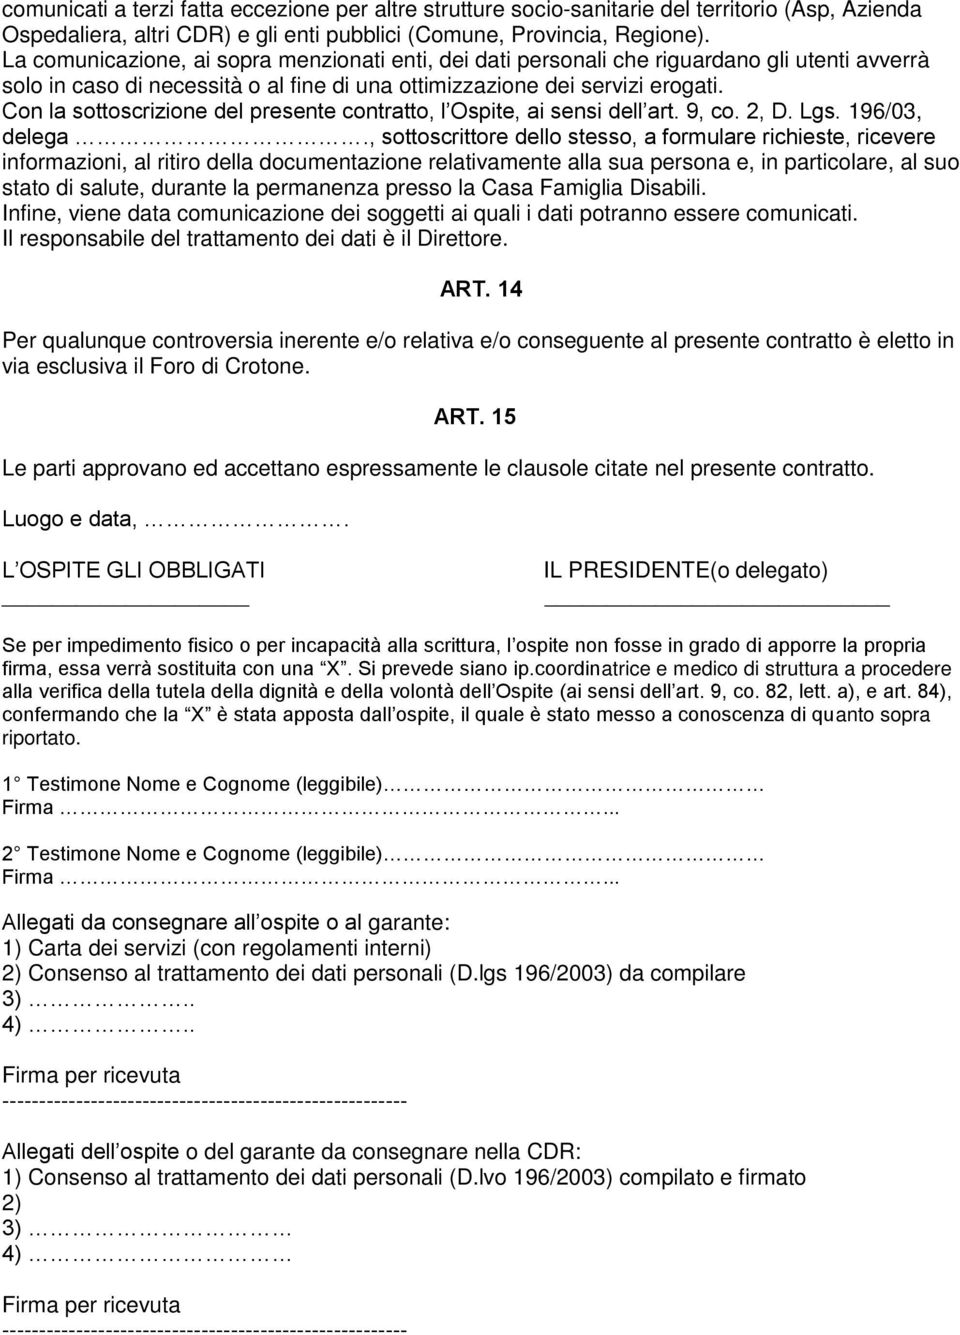 Con la sottoscrizione del presente contratto, l Ospite, ai sensi dell art. 9, co. 2, D. Lgs. 196/03, delega.